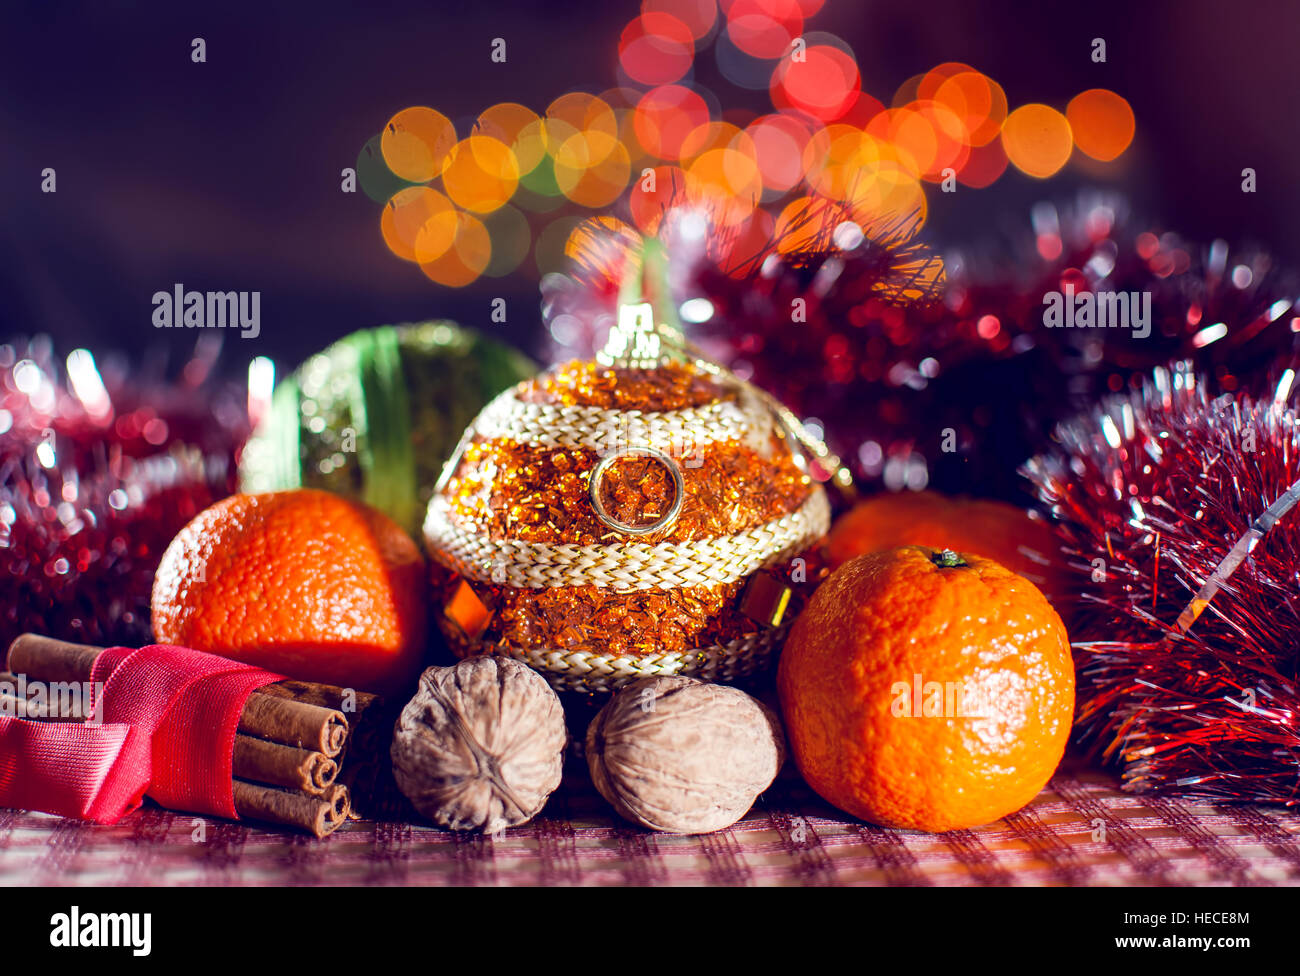 Image de décoration du Nouvel An, des boules de Noël, la cannelle, les mandarines, les noix sur le contexte des lumières bokeh. Clé faible. Focus sélectif. Banque D'Images